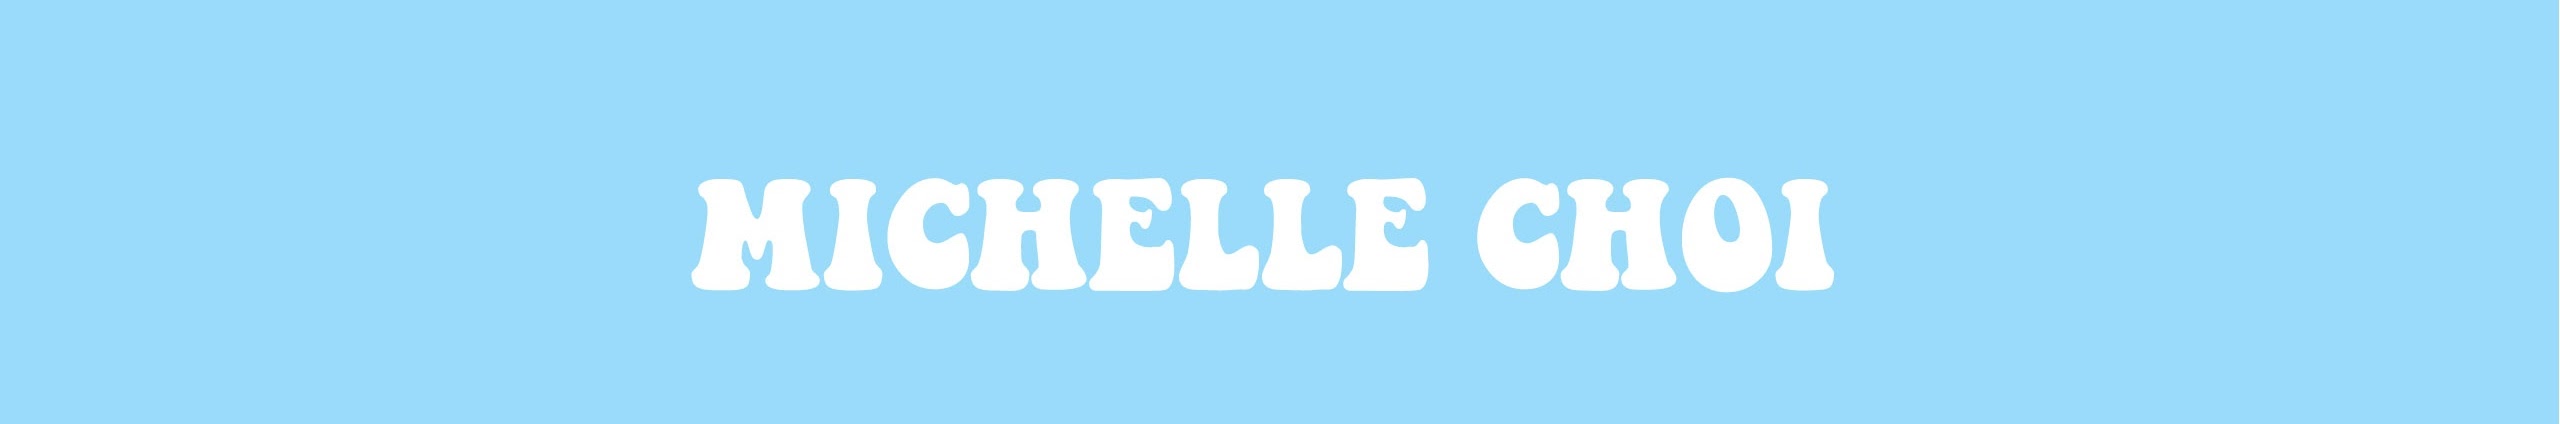 Michelle-Choi-banner